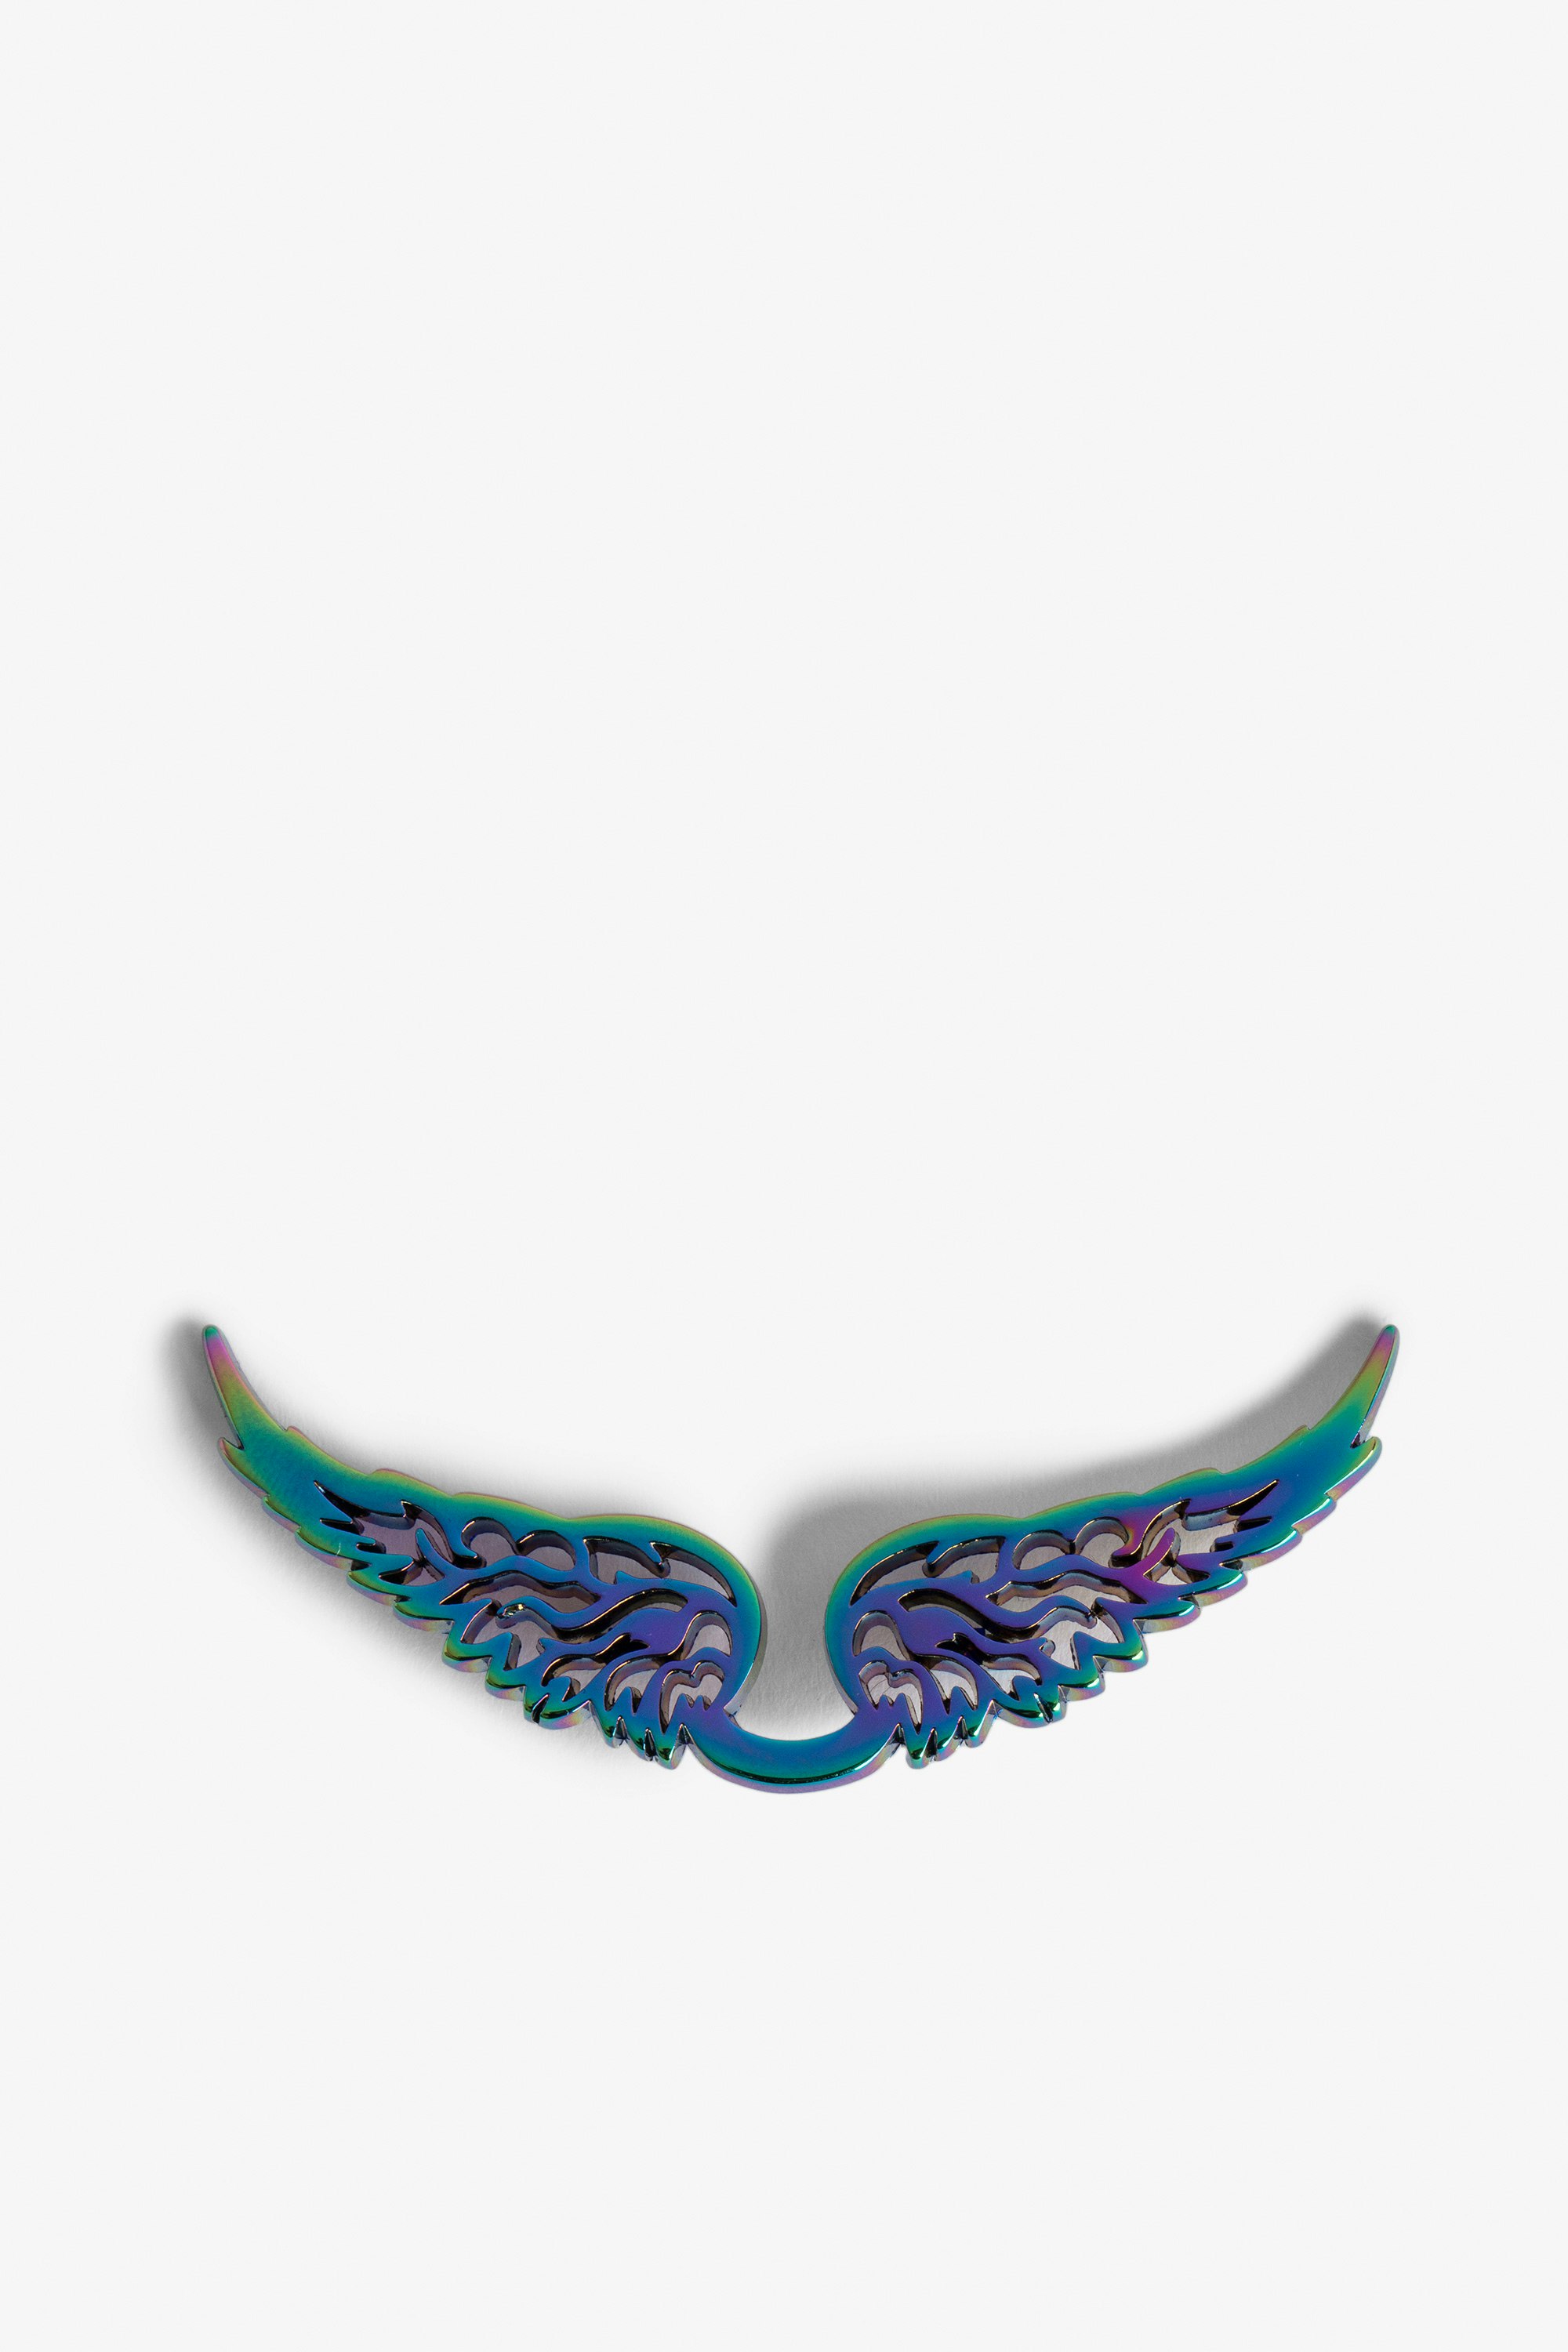 Colgante Swing Your Wings Arcoíris - Colgante de alas para enganchar al bolso de mano Rock Swing Your Wings.